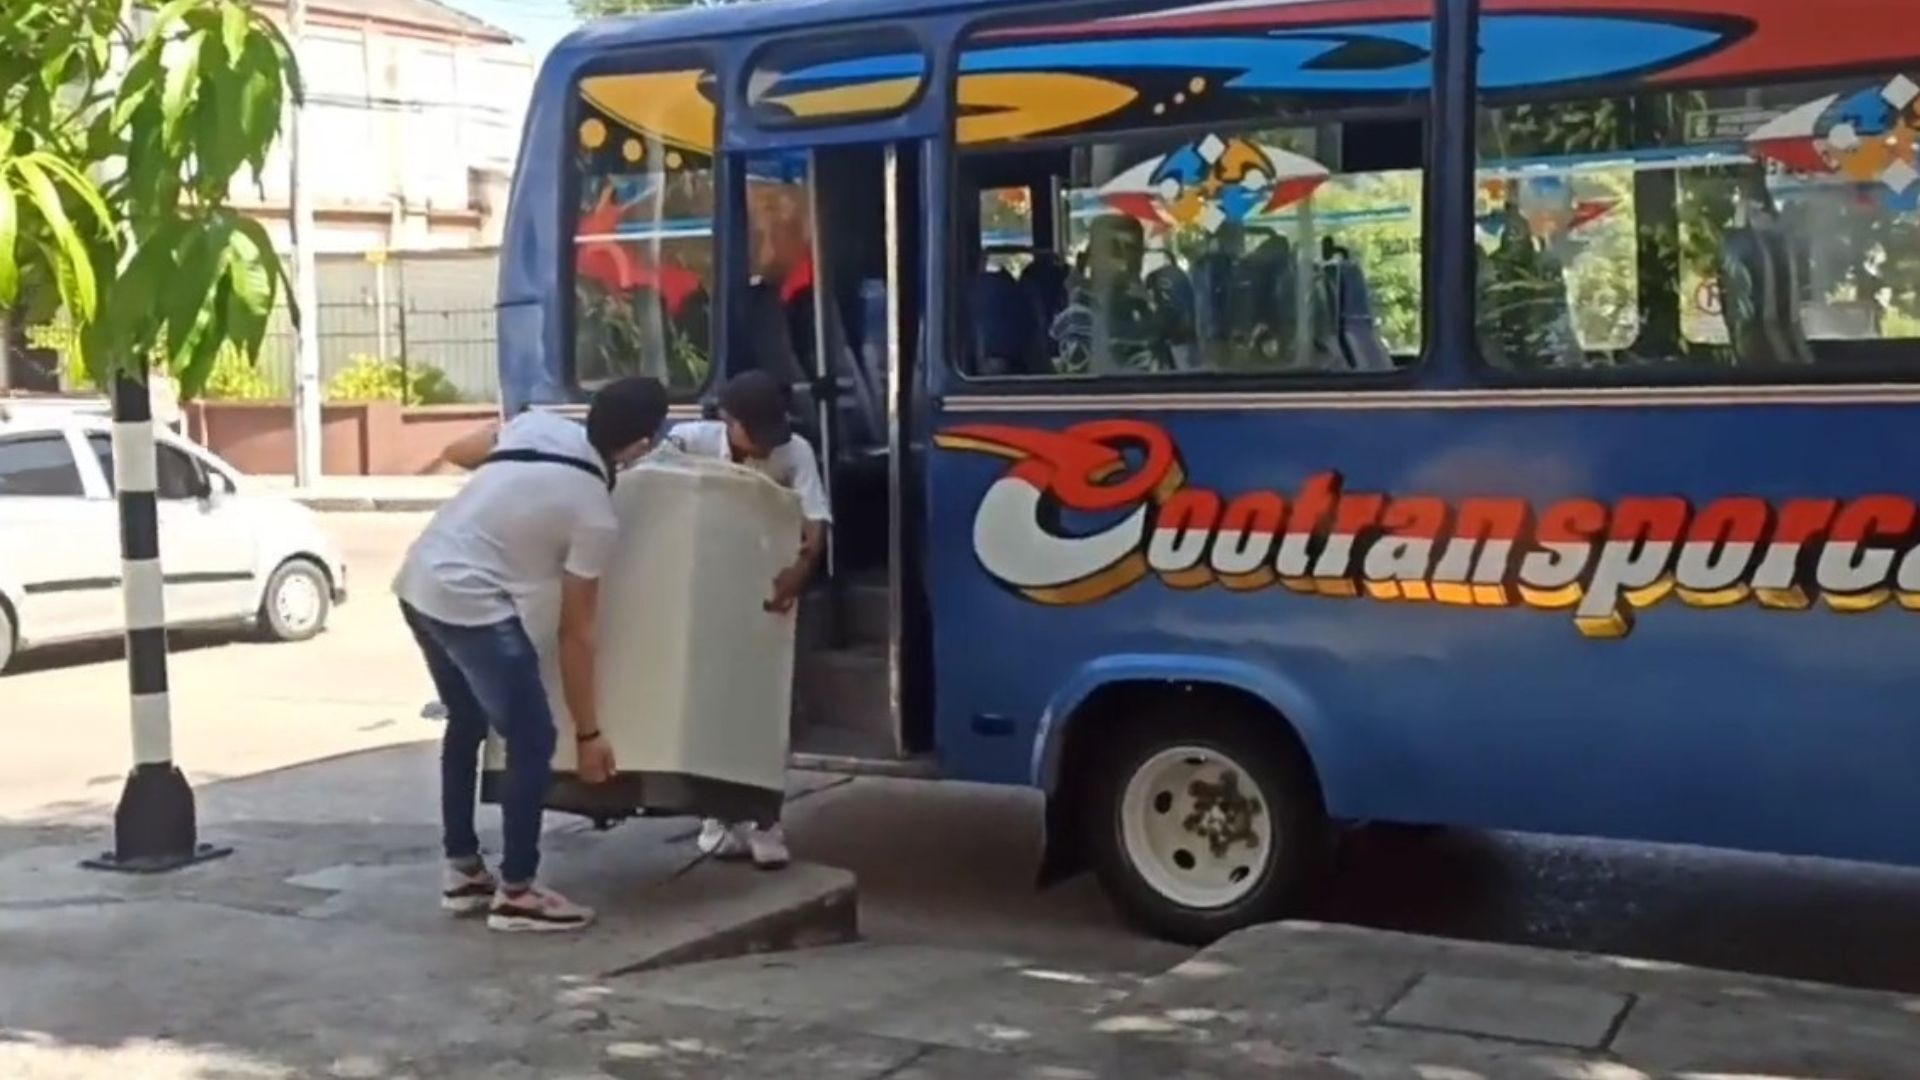 Vuelve y juega, intentan trastear lavadora en un bus de Barranquilla